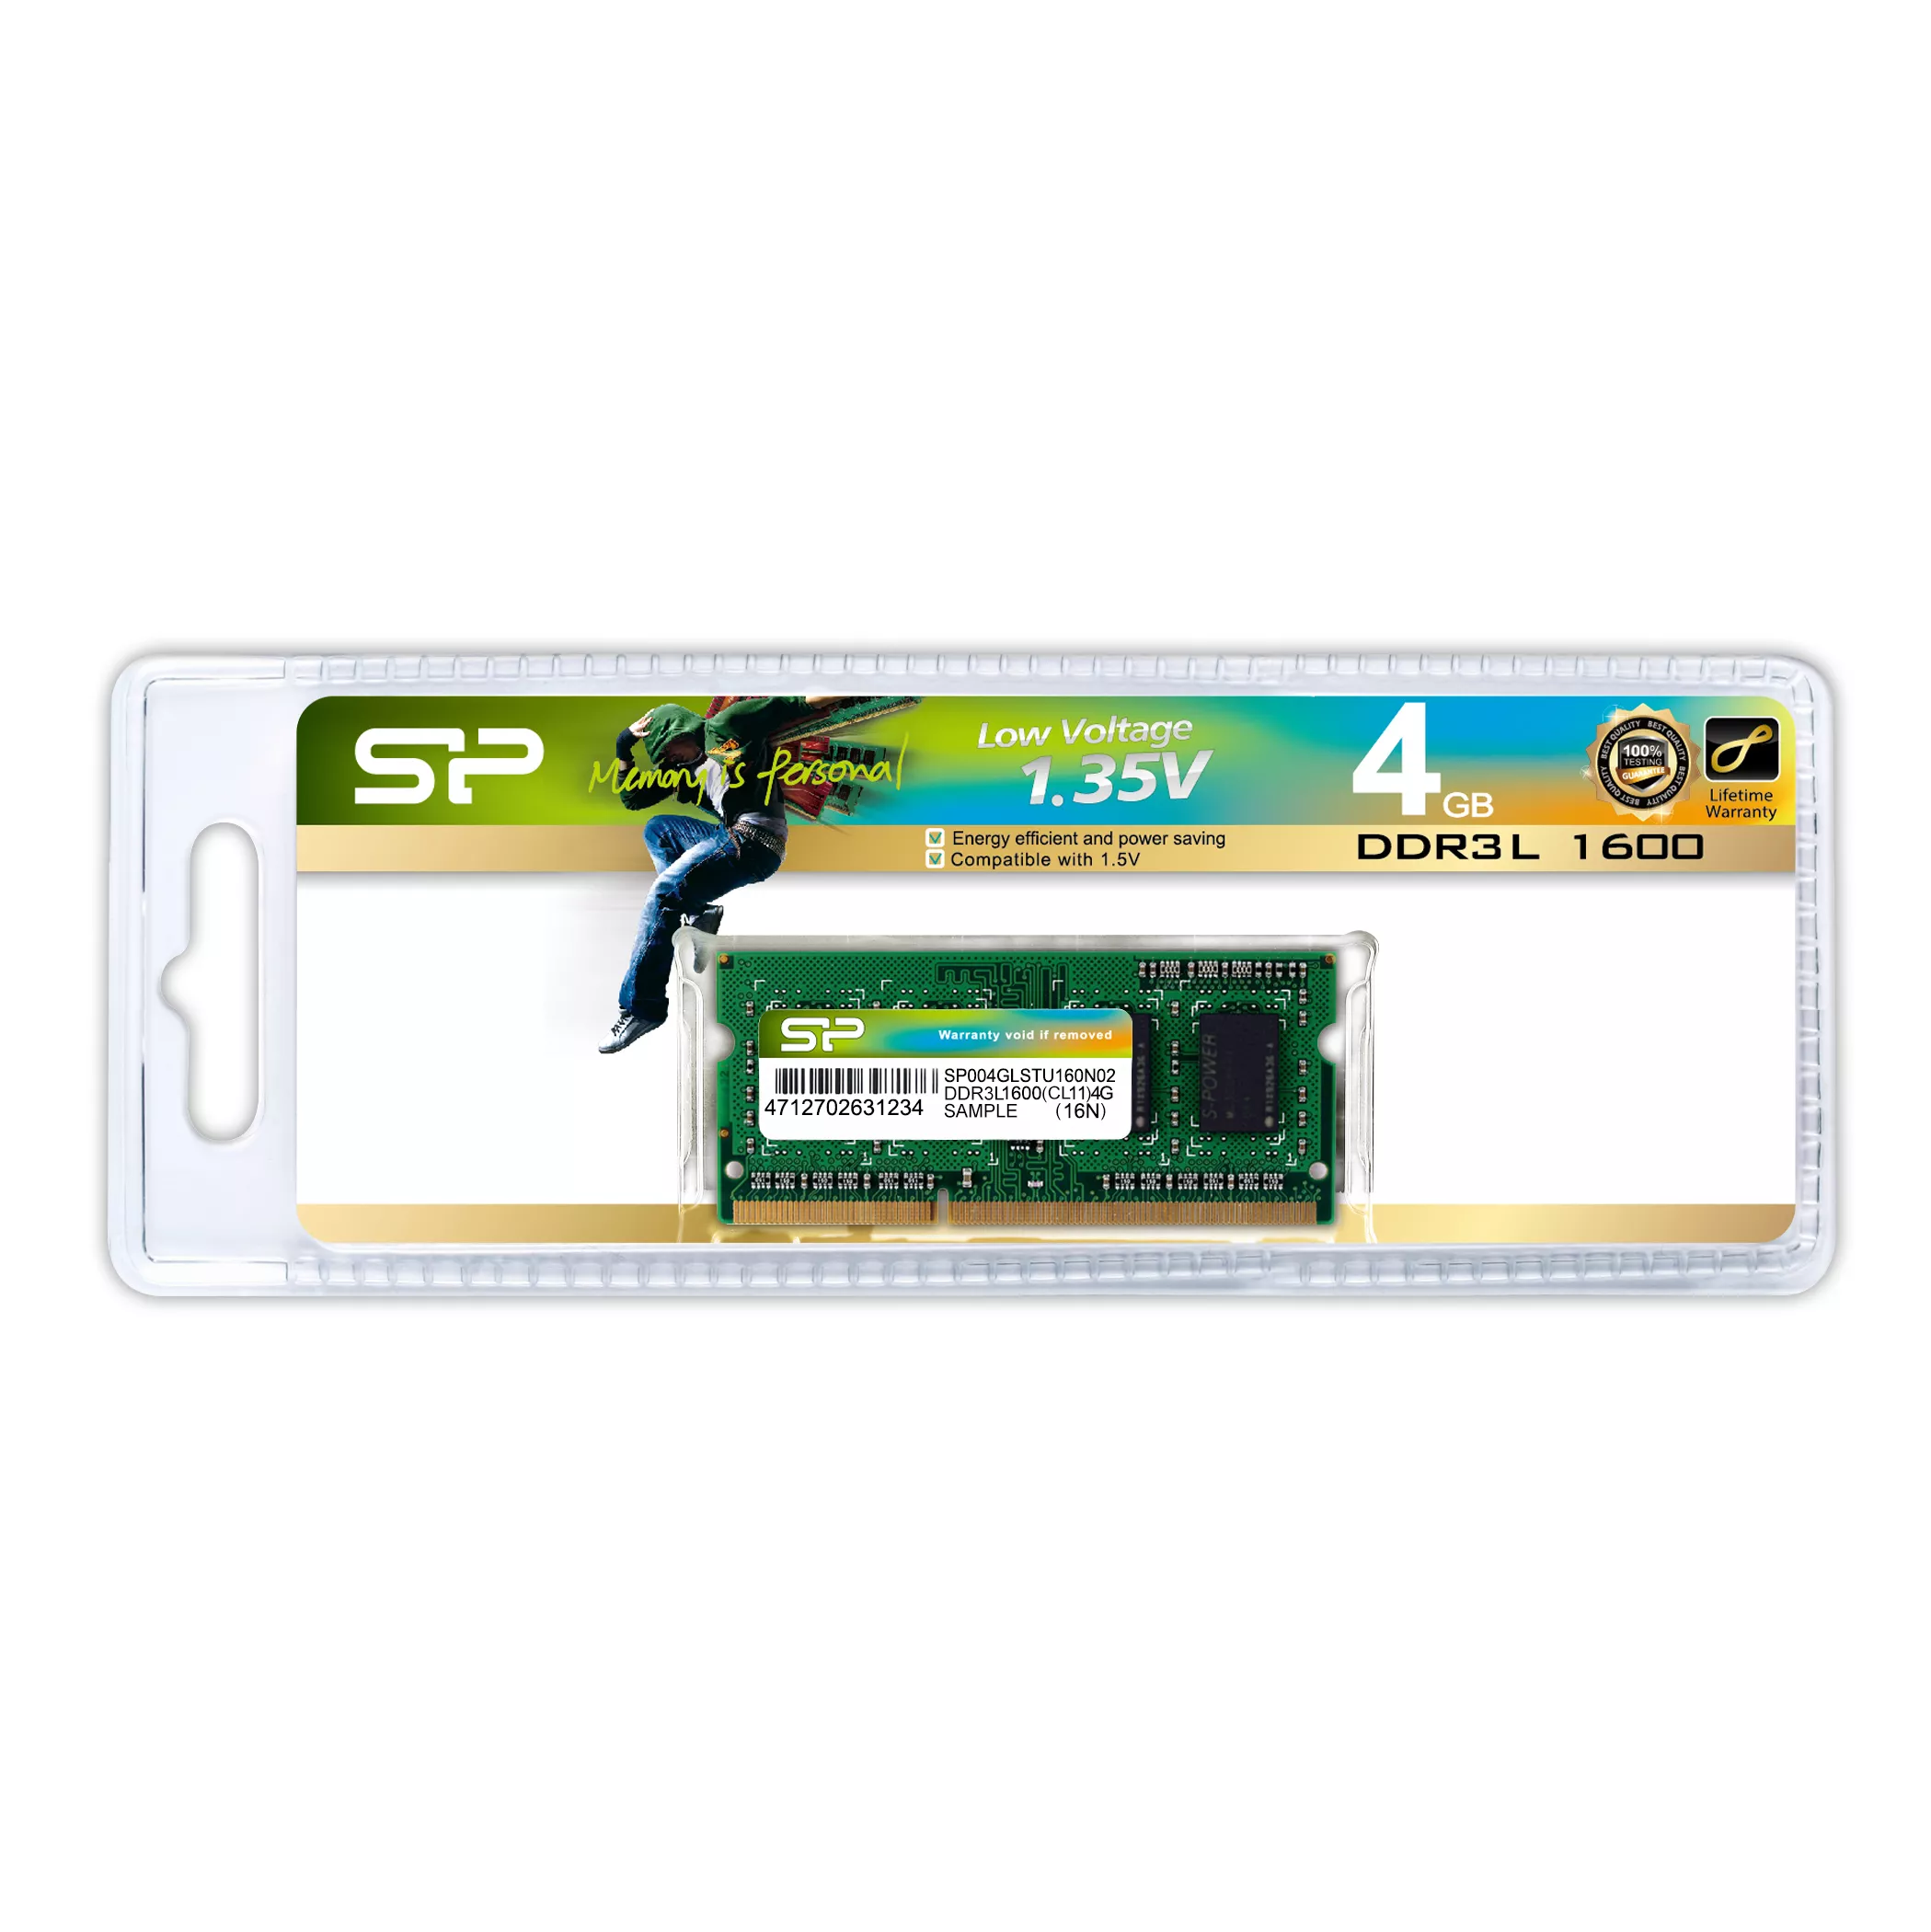 Vente SILICON POWER DDR3 4Go 1600MHz CL11 SO-DIMM 1 Silicon Power au meilleur prix - visuel 2